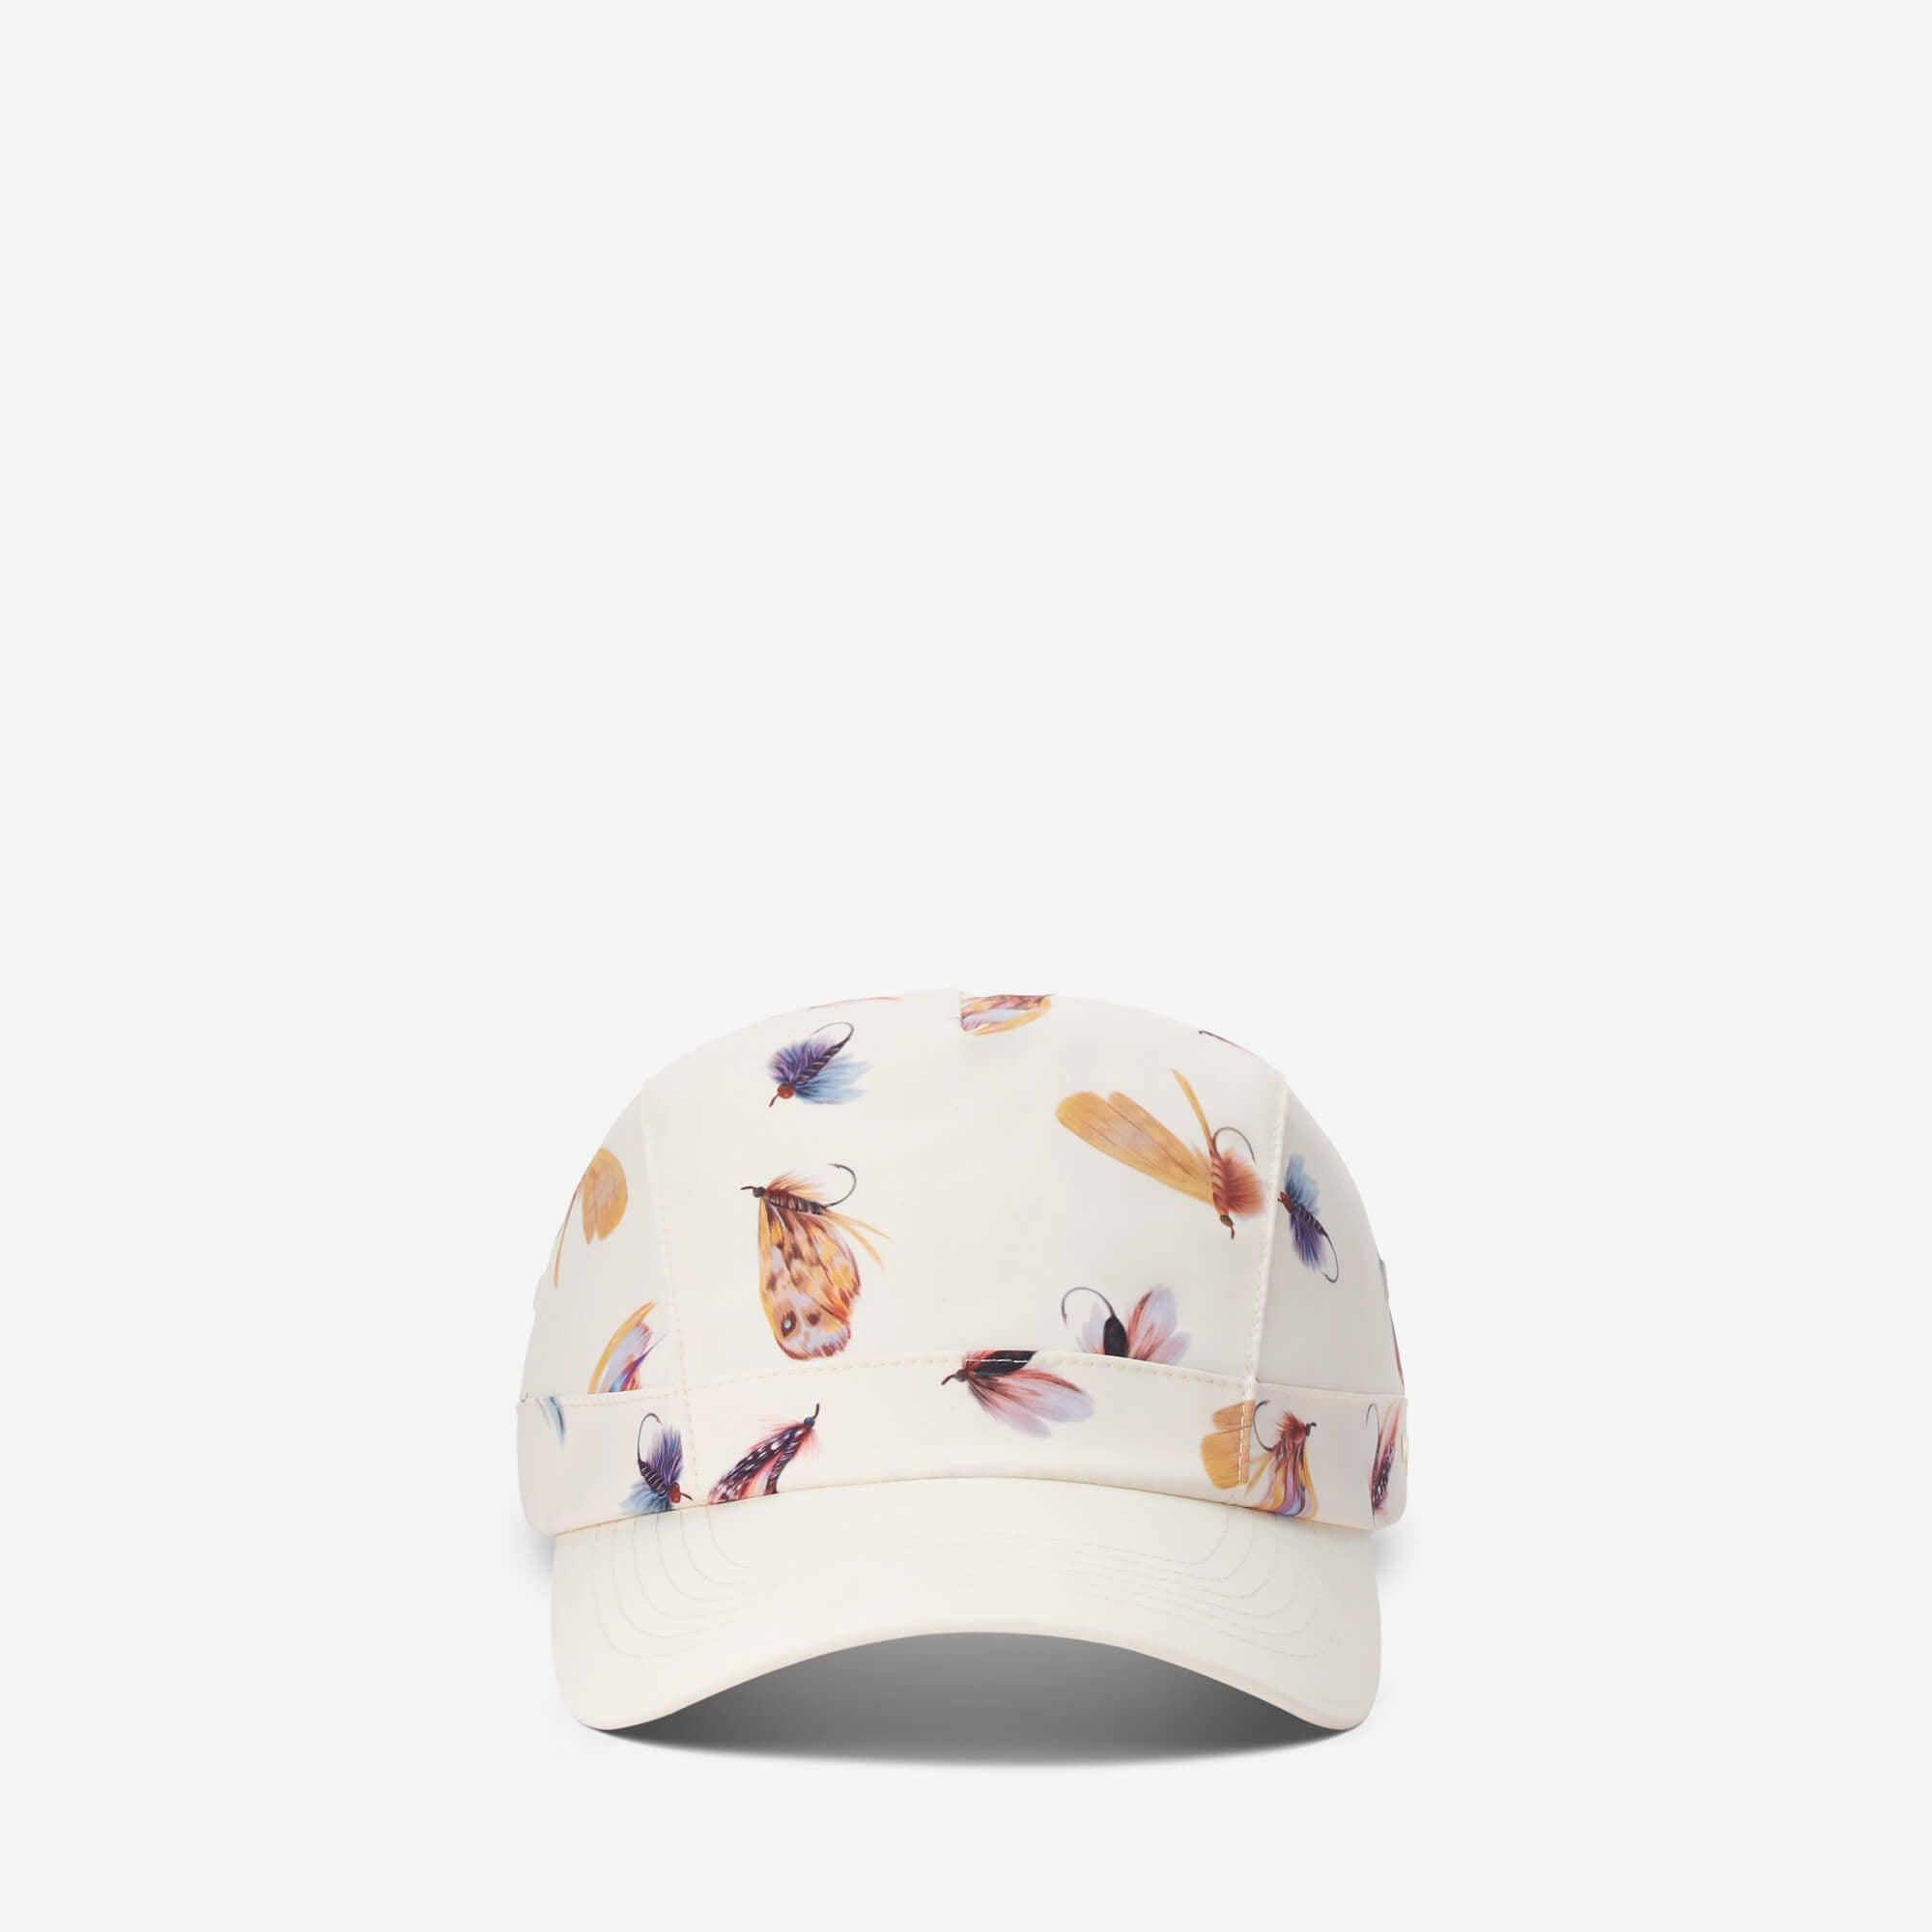 MaH Sun Hat For Teens - Printing Cap